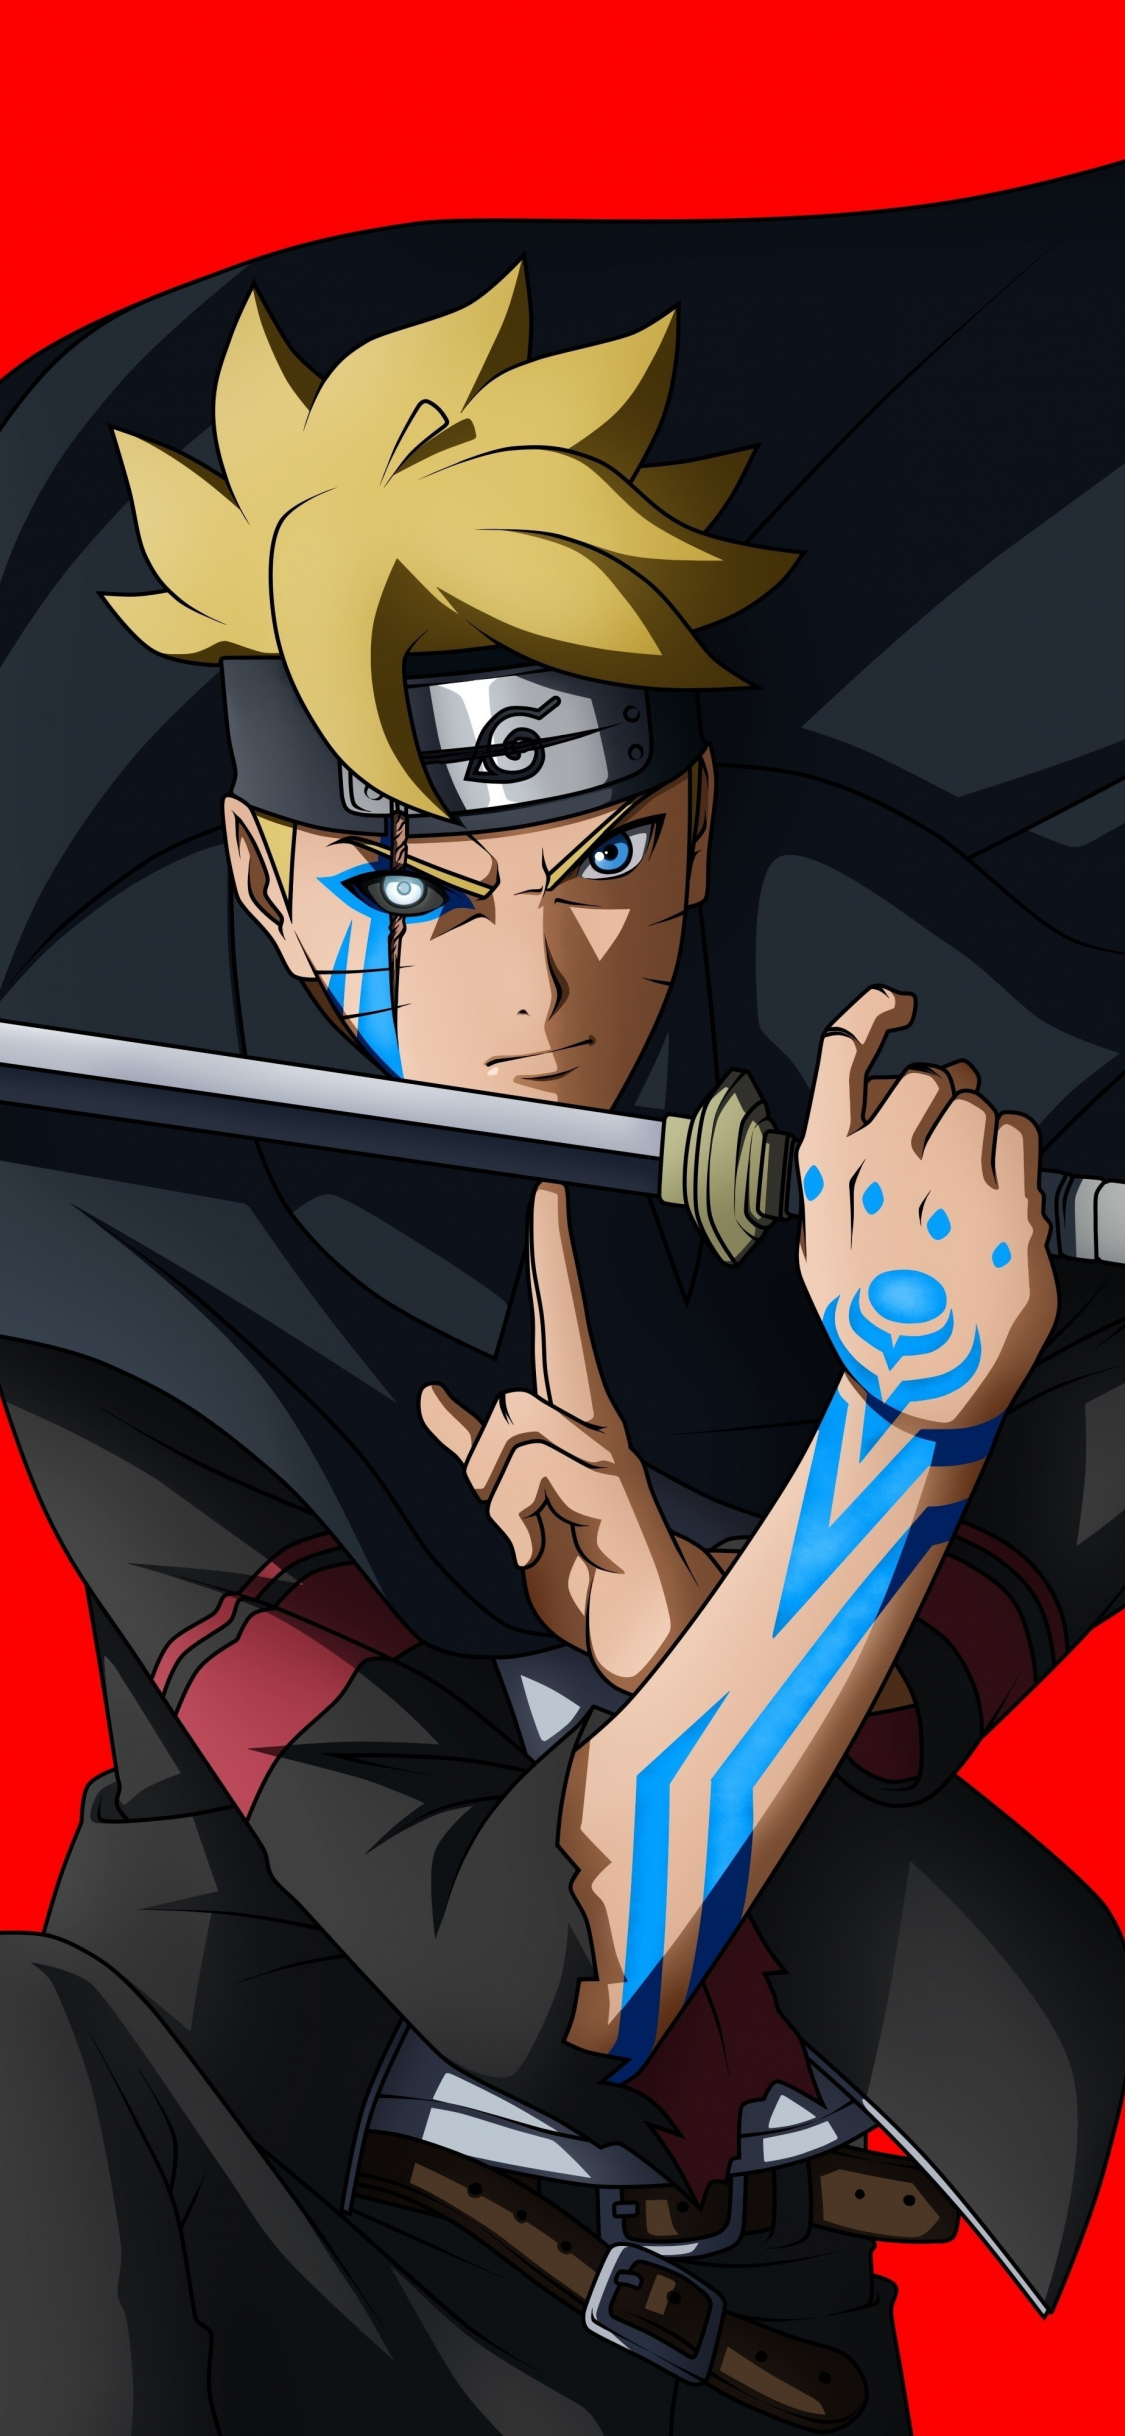 Download 1125x2436 Wallpaper Boruto Uzumaki Naruto Shippuden Anime Naruto Iphone X 1125x2436 Hd Image Background 3239